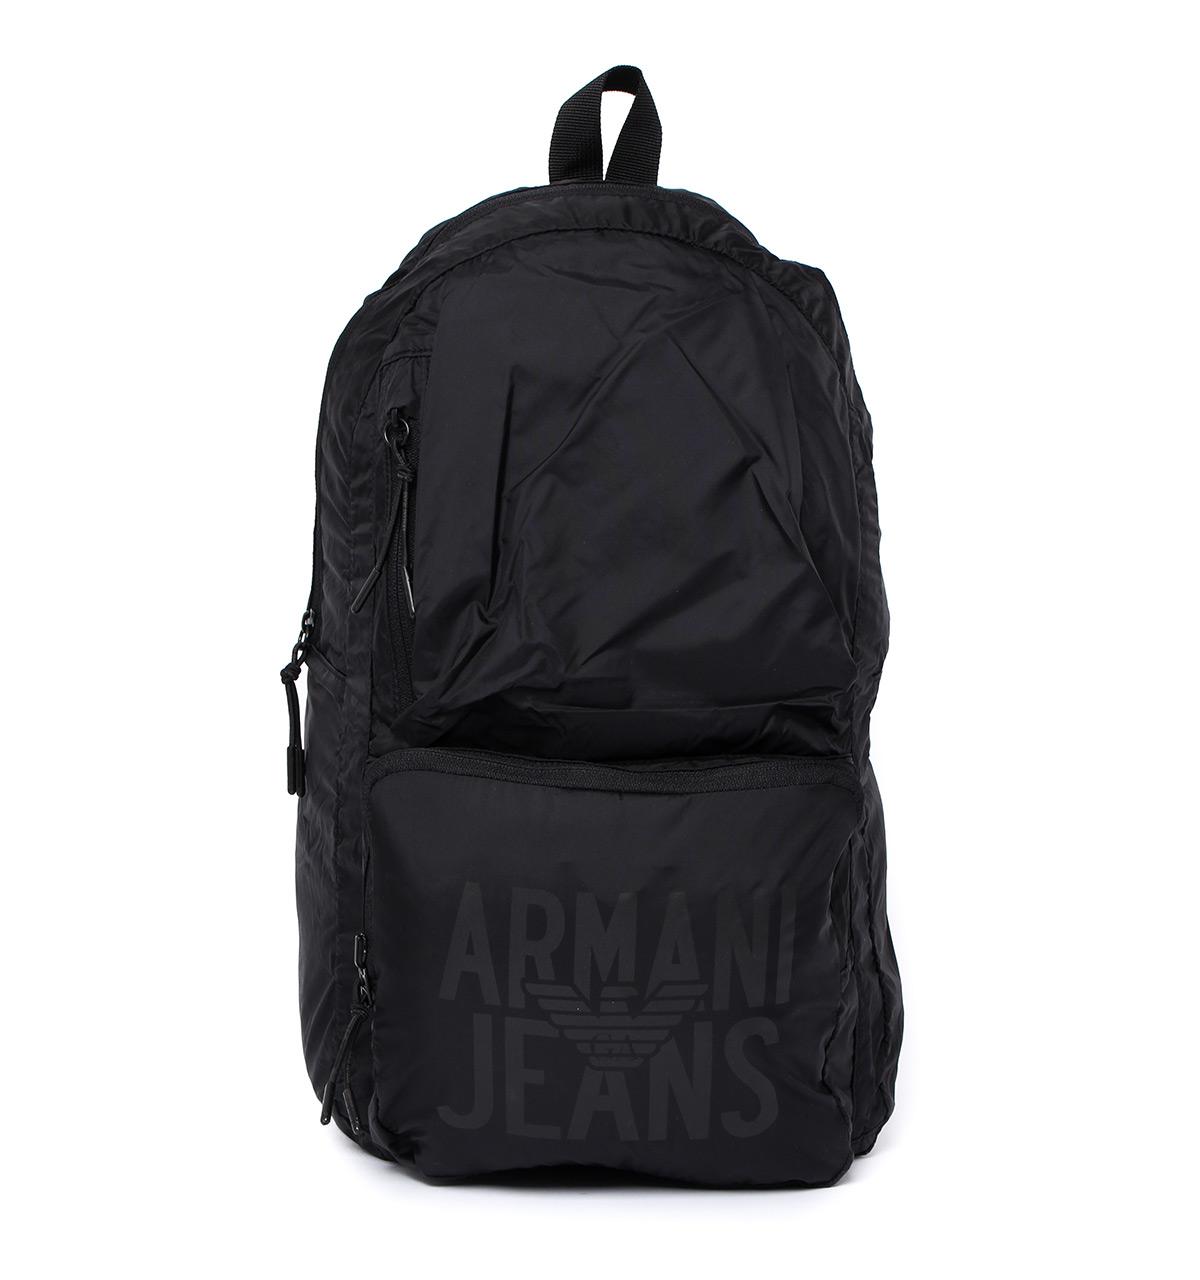 Armani Jeans Denim Black Packable Backpack for Men - Lyst